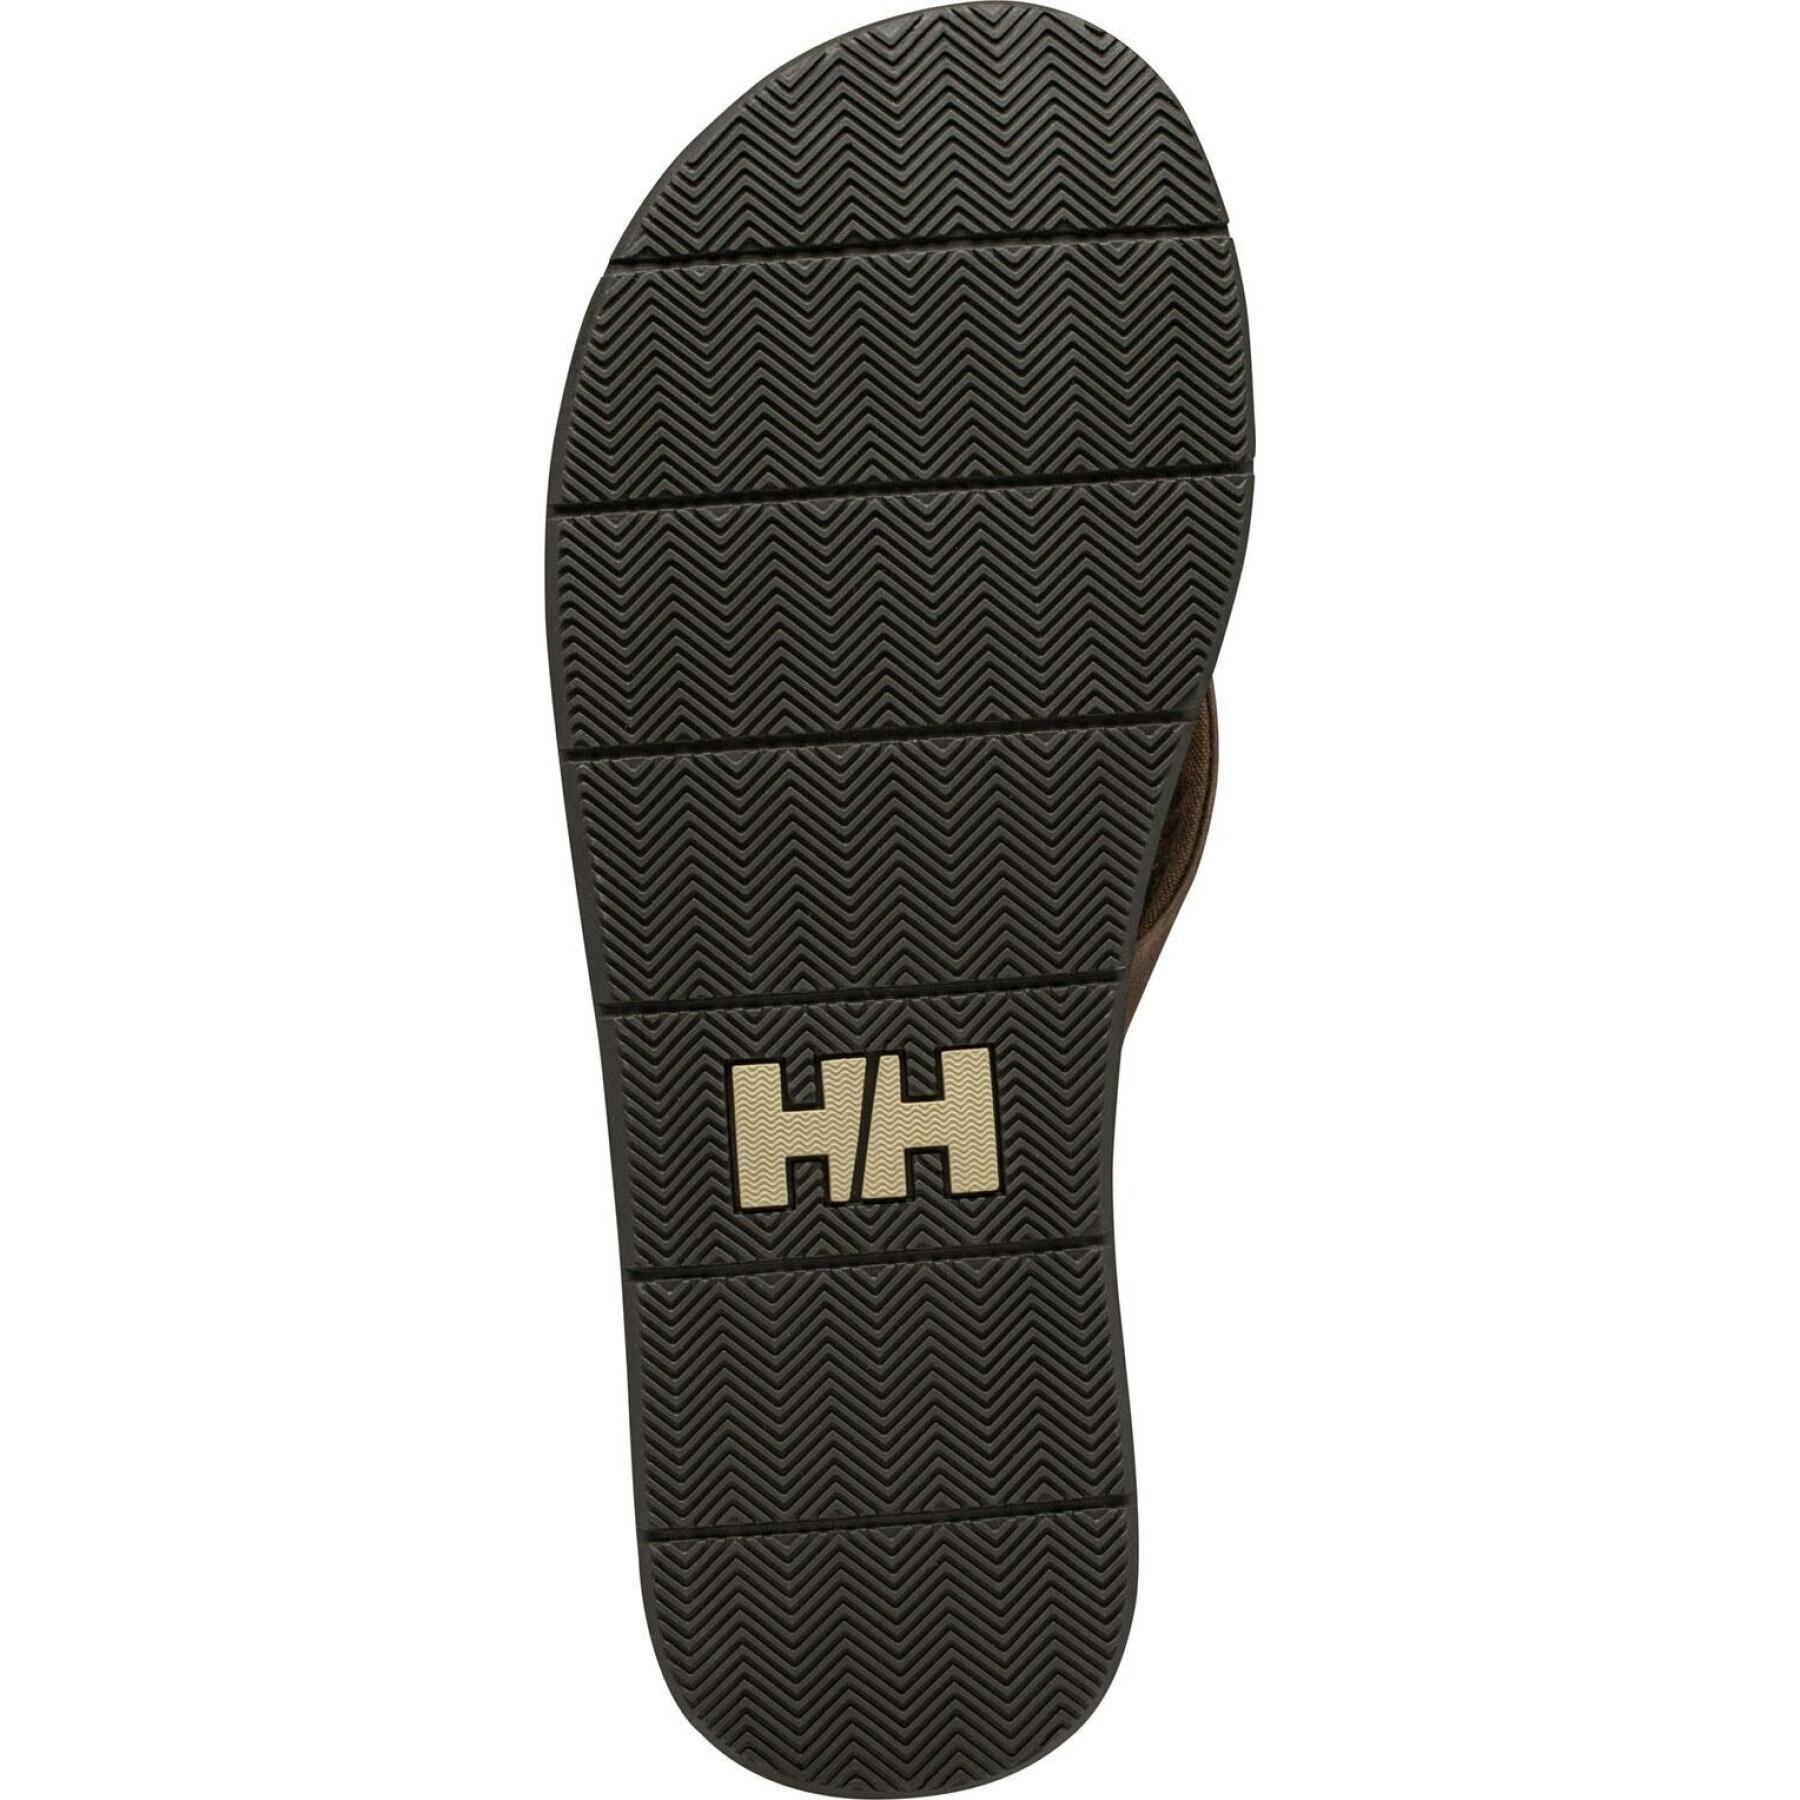 Leren slippers Helly Hansen Seasand